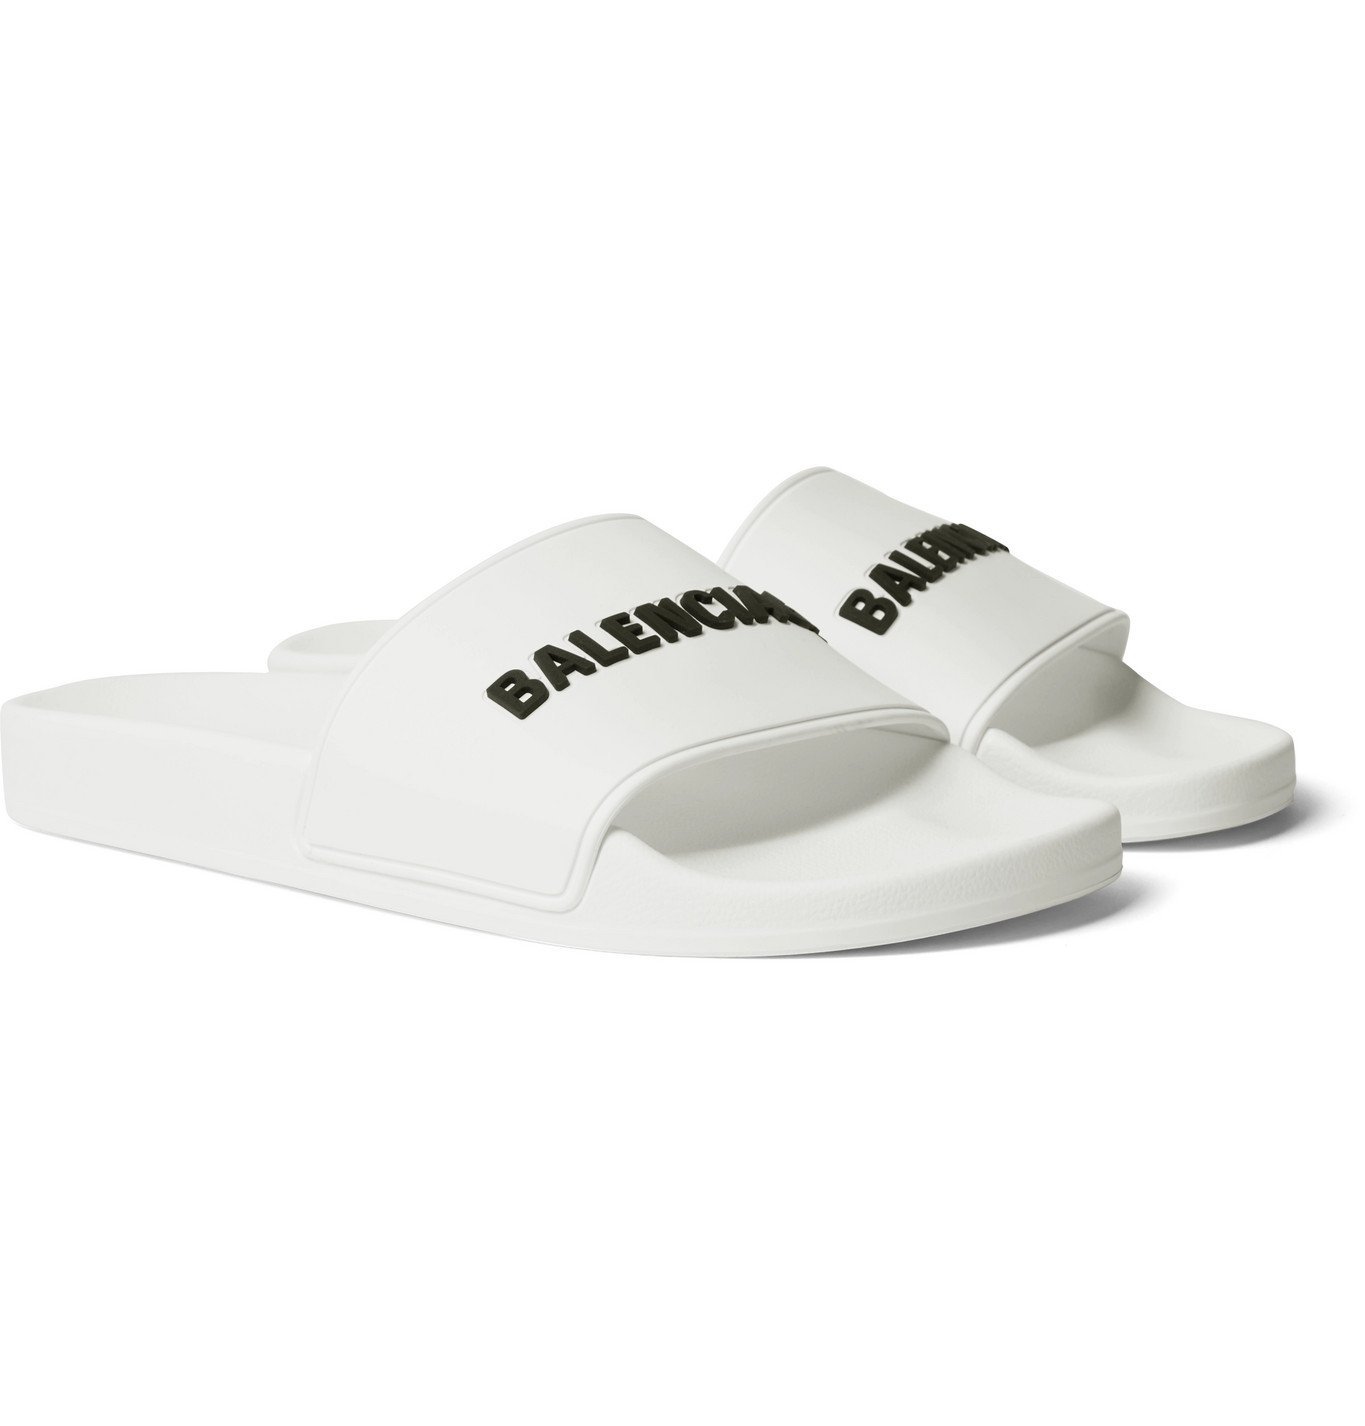 BALENCIAGA - Logo-Detailed Rubber Slides - White Balenciaga